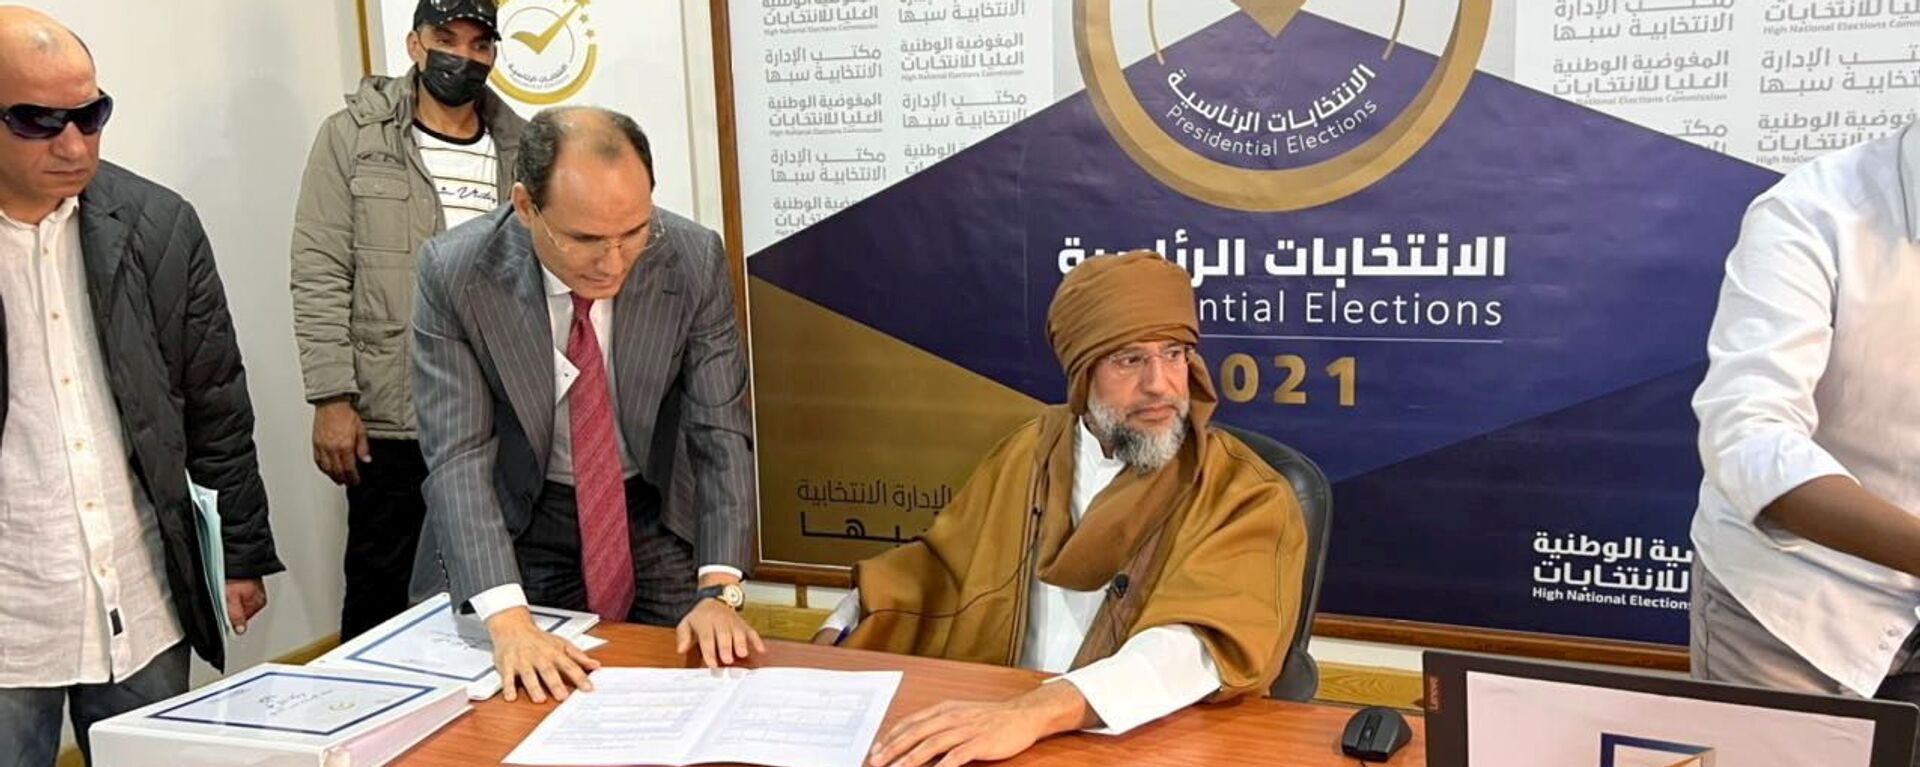 سيف الإسلام القذافي يعلن ترشحه للانتخابات الرئاسية في ليبيا - سبوتنيك عربي, 1920, 23.11.2021